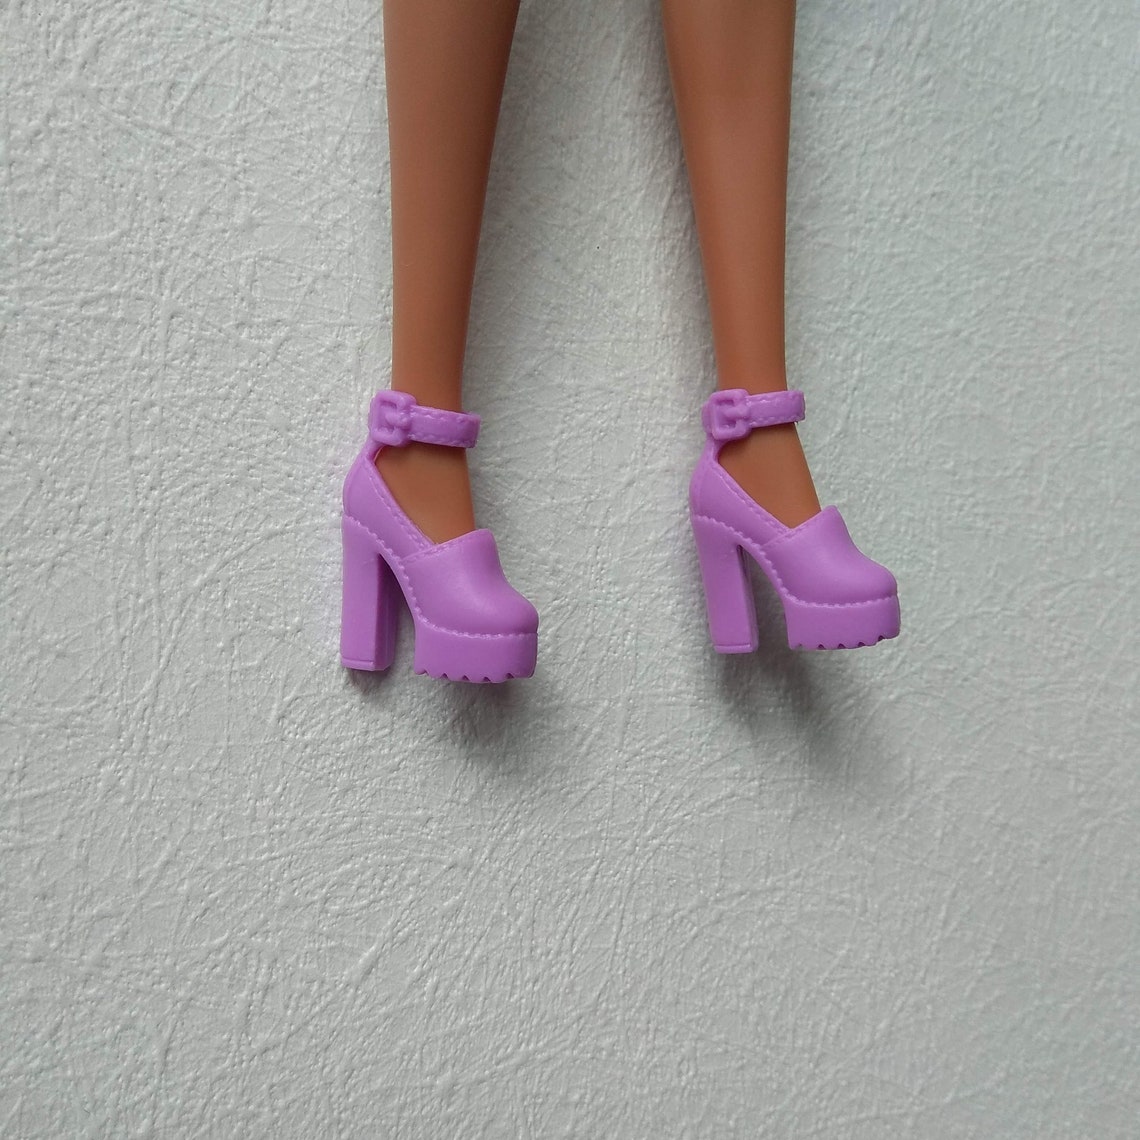 Barbie shoes Doll shoes Barbie clothes Barbie black shoes | Etsy